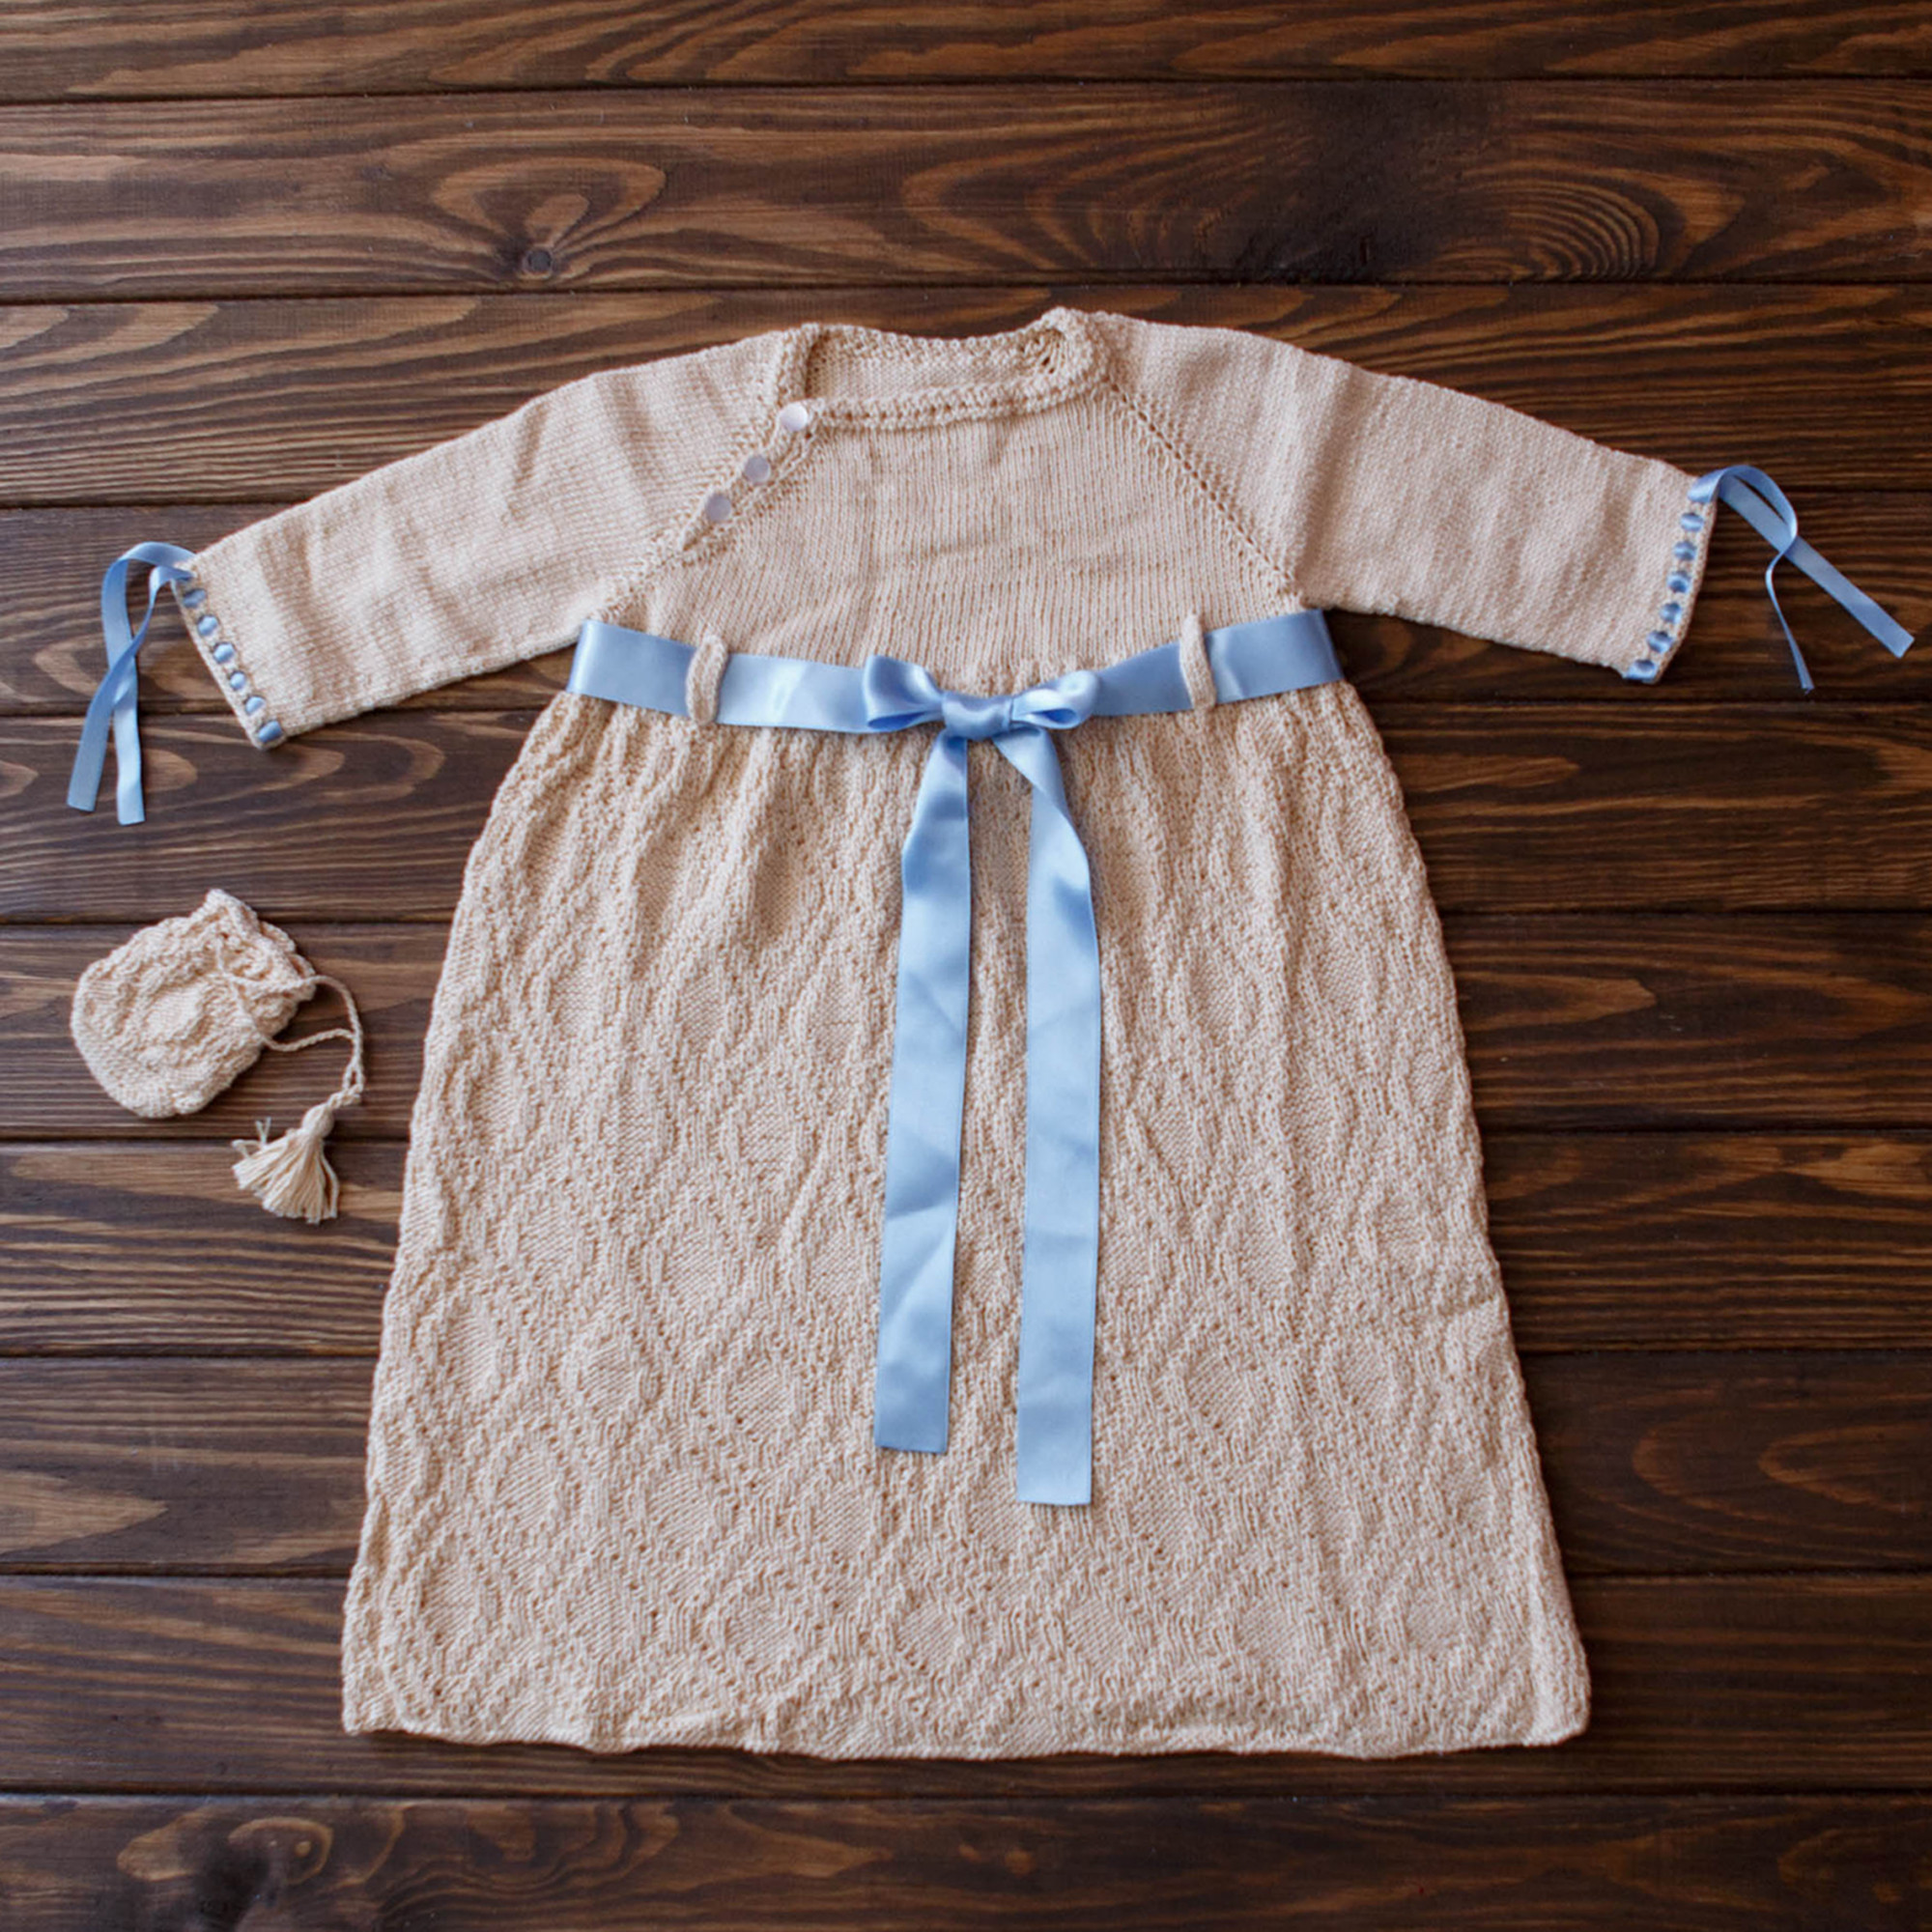 Hand Knitted Elegant Baby Boy Dress Set Matching Drawstring Bag